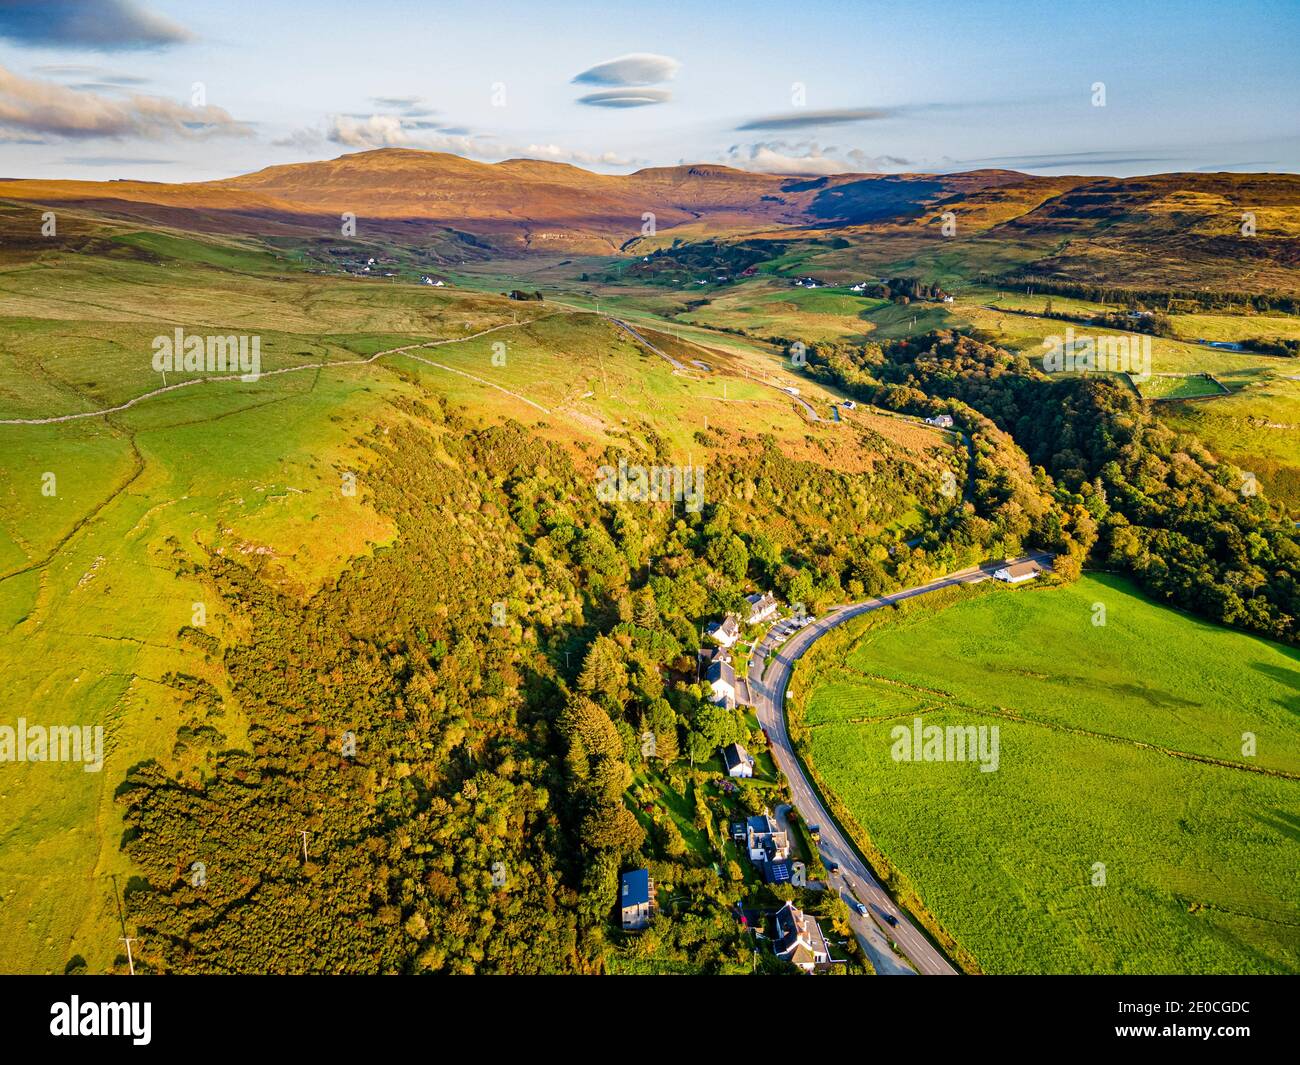 Luftaufnahme von Uig Bay, Isle of Skye, Innere Hebriden, Schottland, Vereinigtes Königreich, Europa Stockfoto